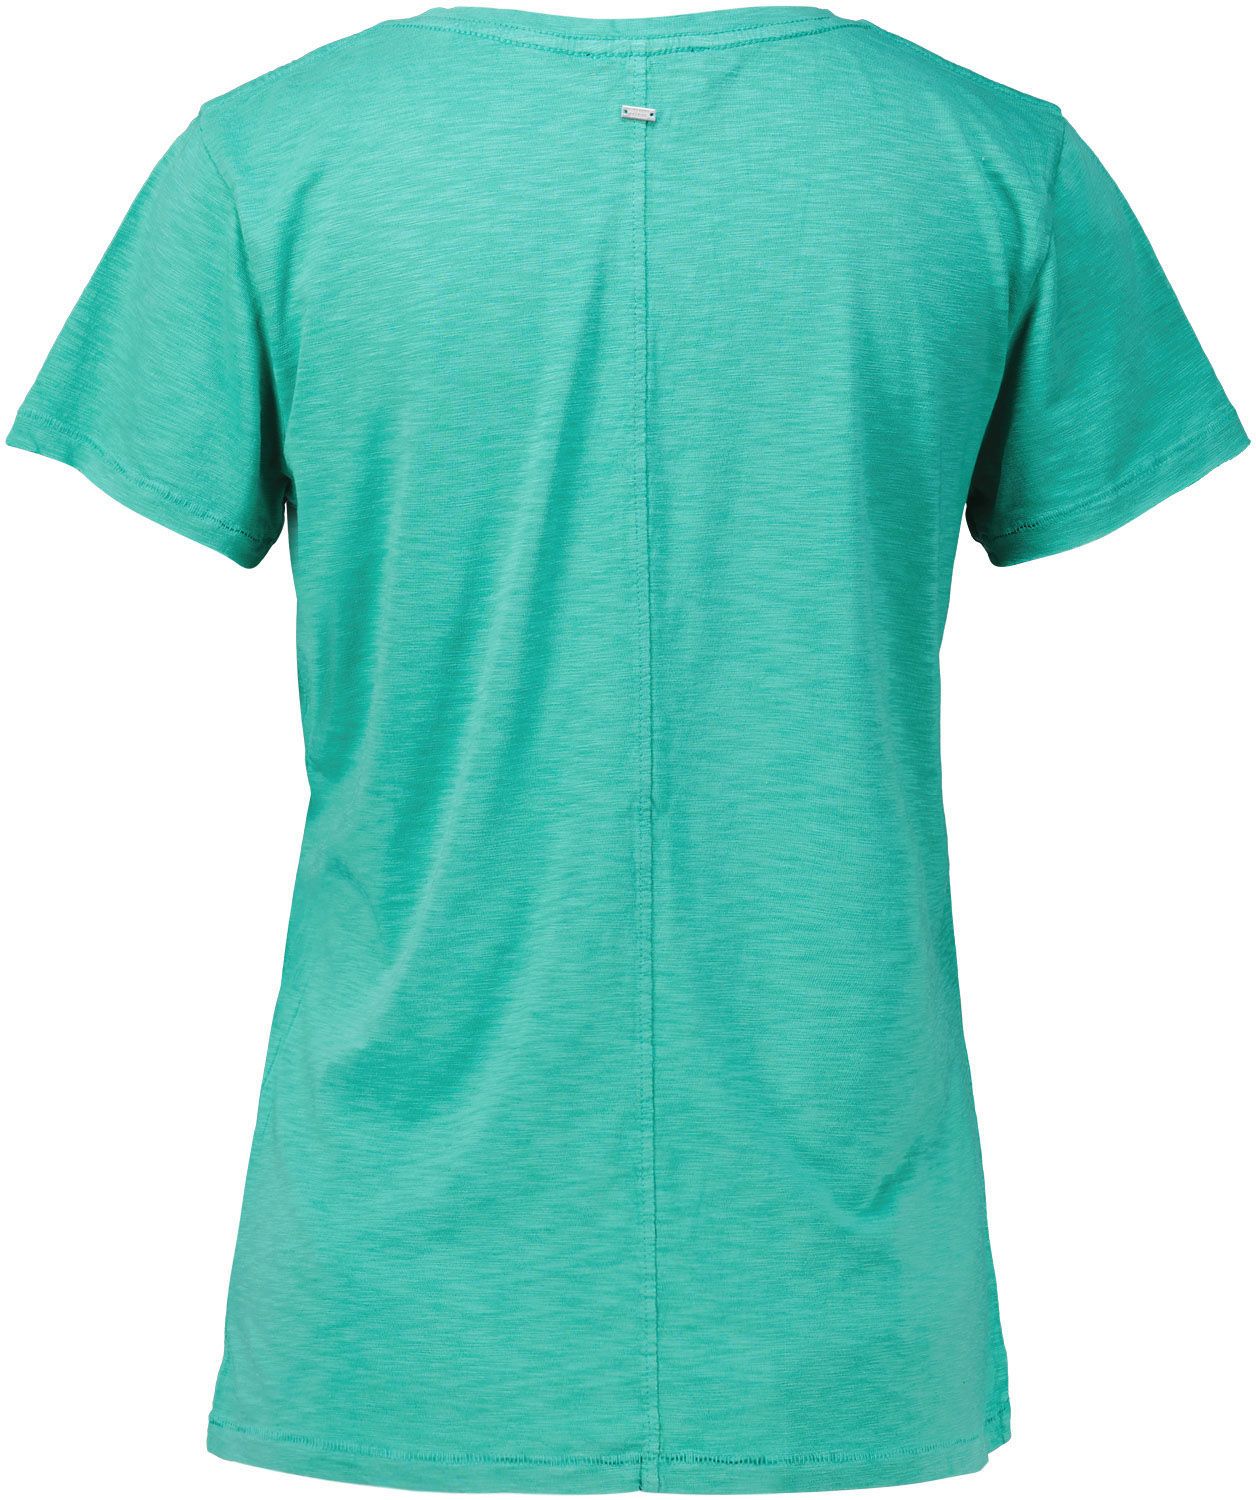 Superdry T-Shirt Groen